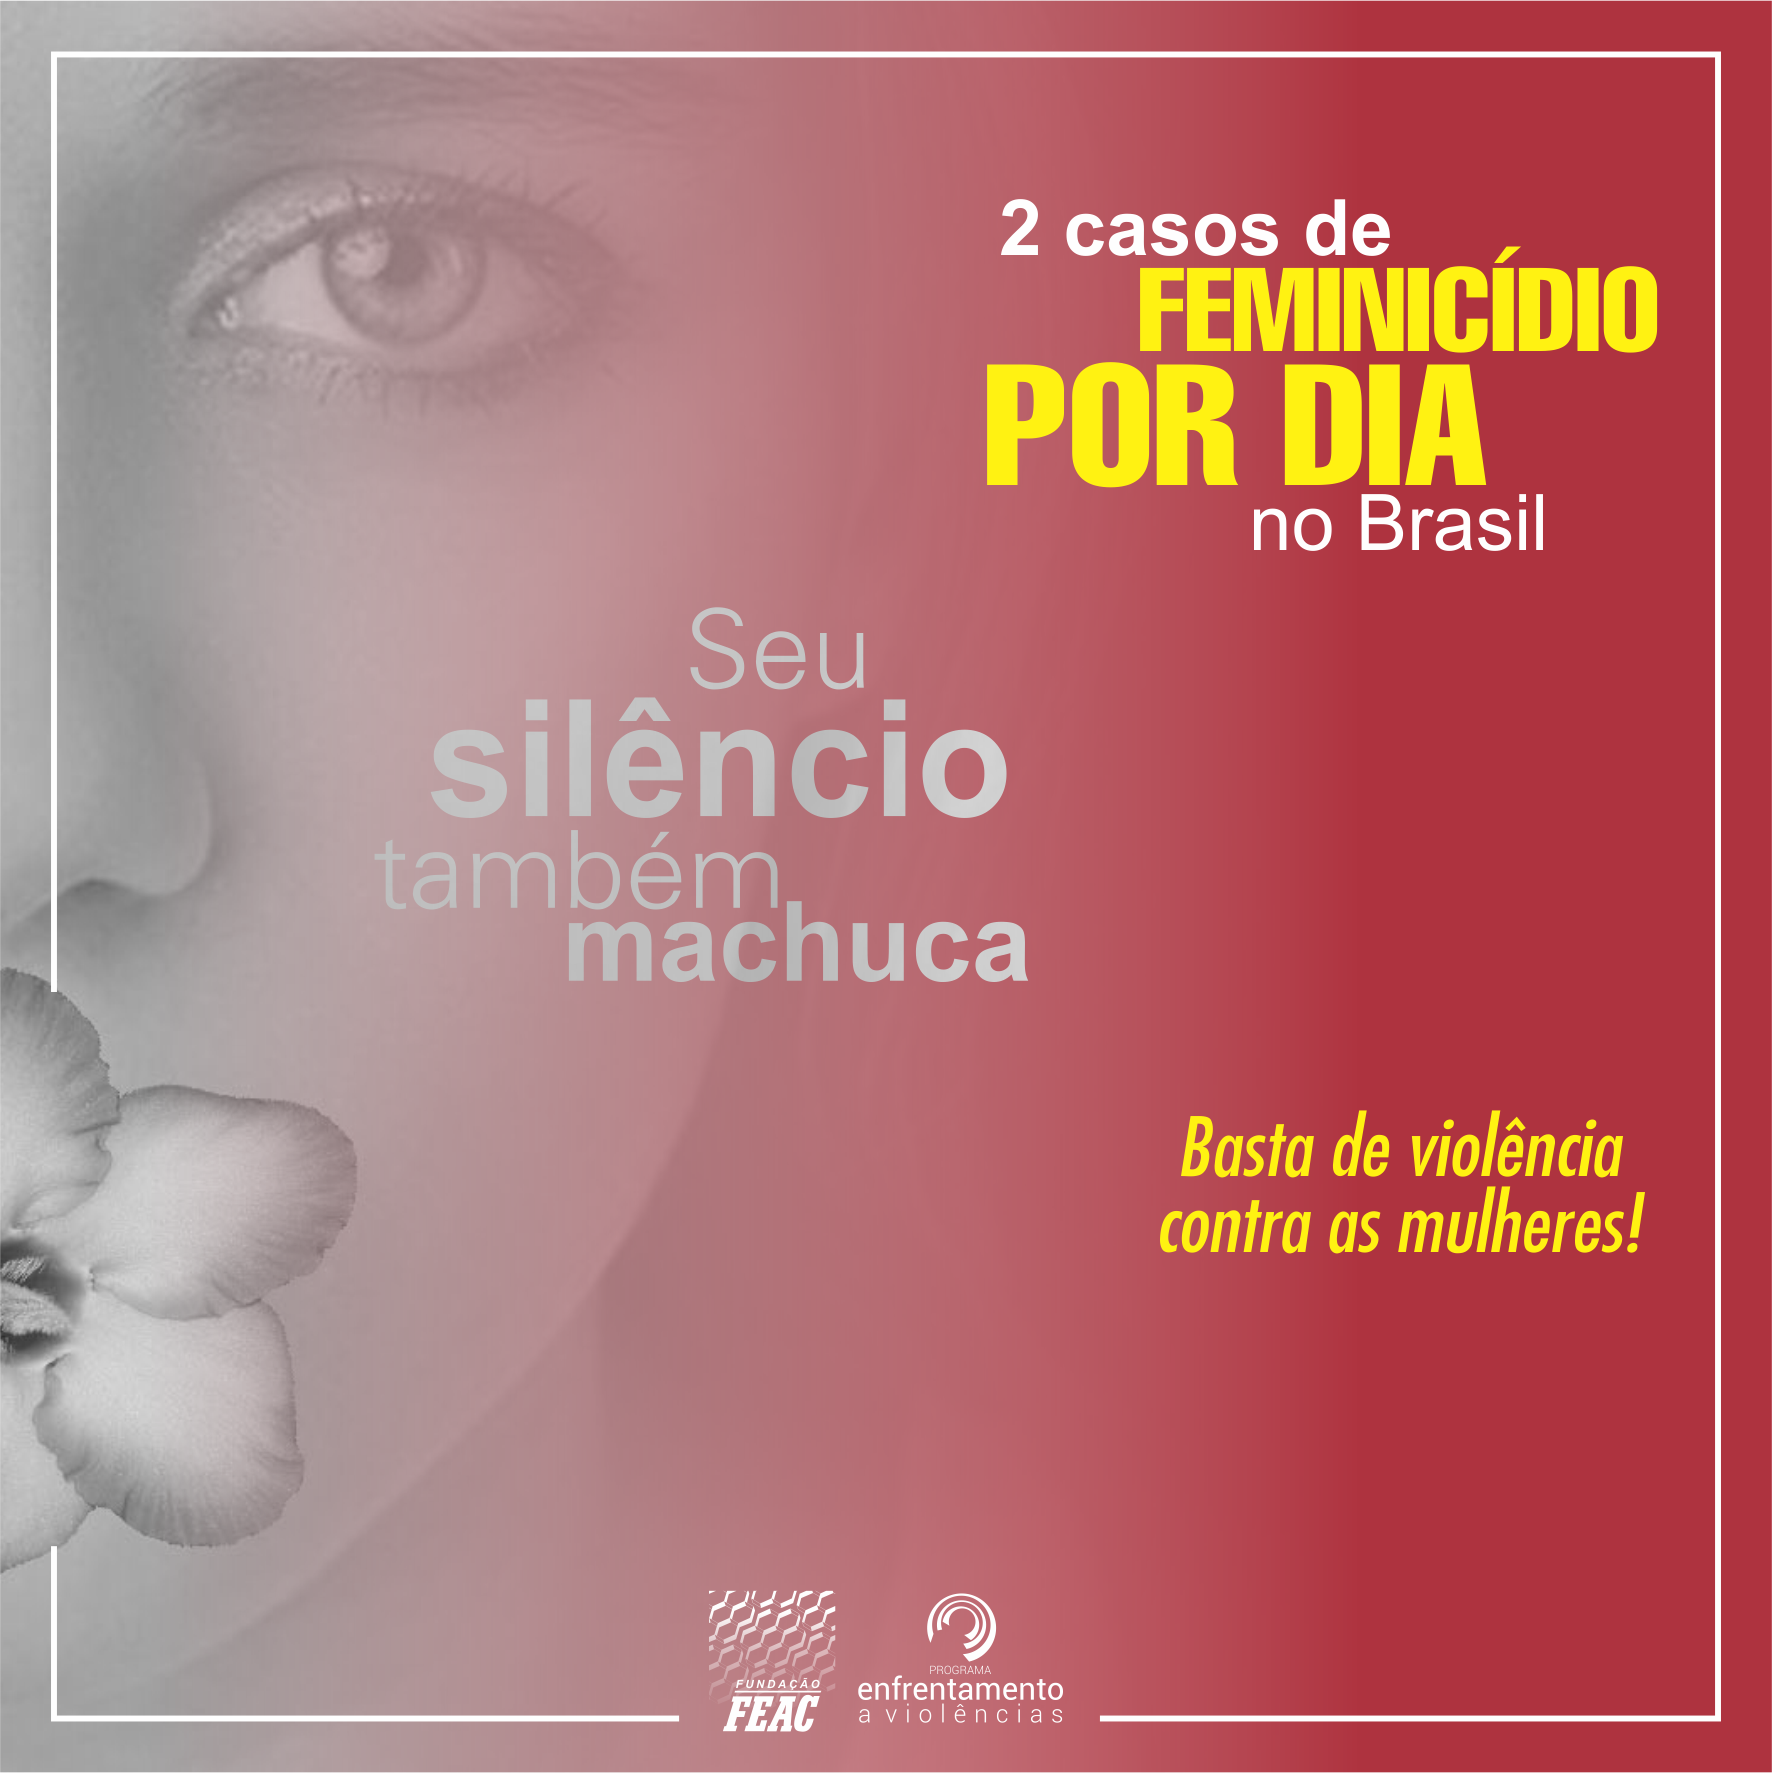 2 casos de feminicídio por dia no Brasil